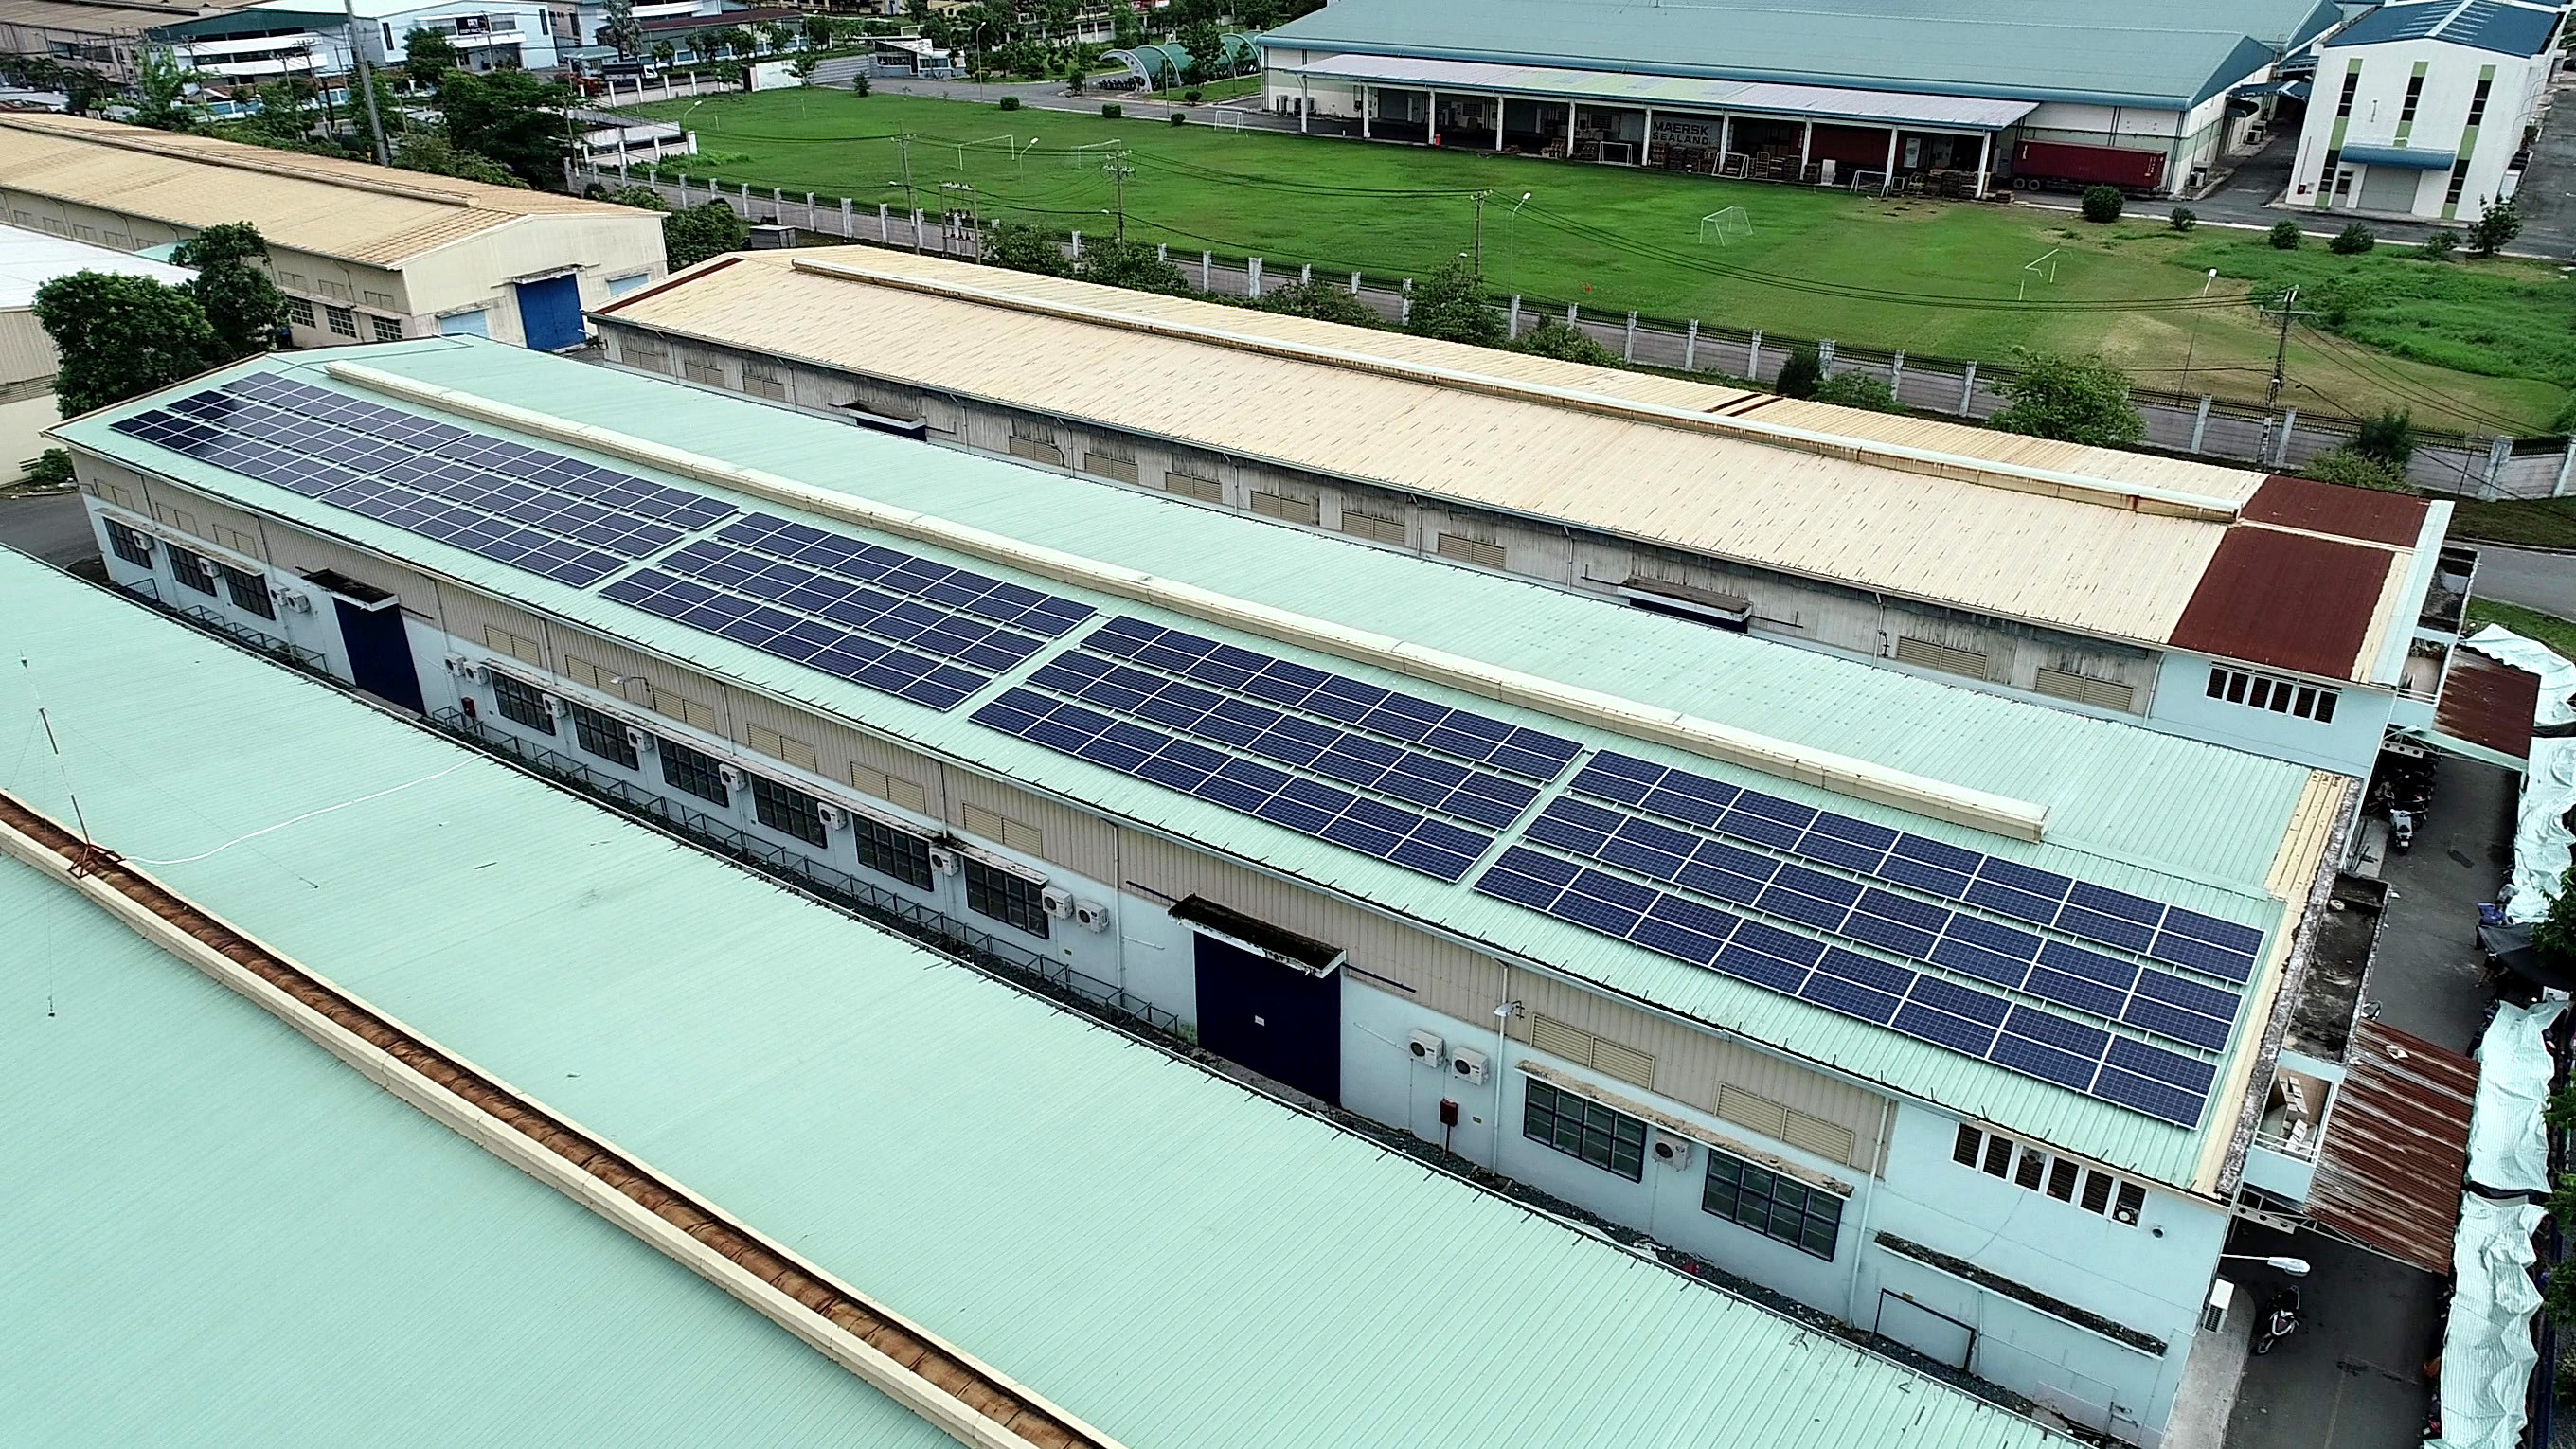 Đồng Nai: Hàng loạt dự án điện mặt trời mái nhà đang vướng mắc - ảnh 1